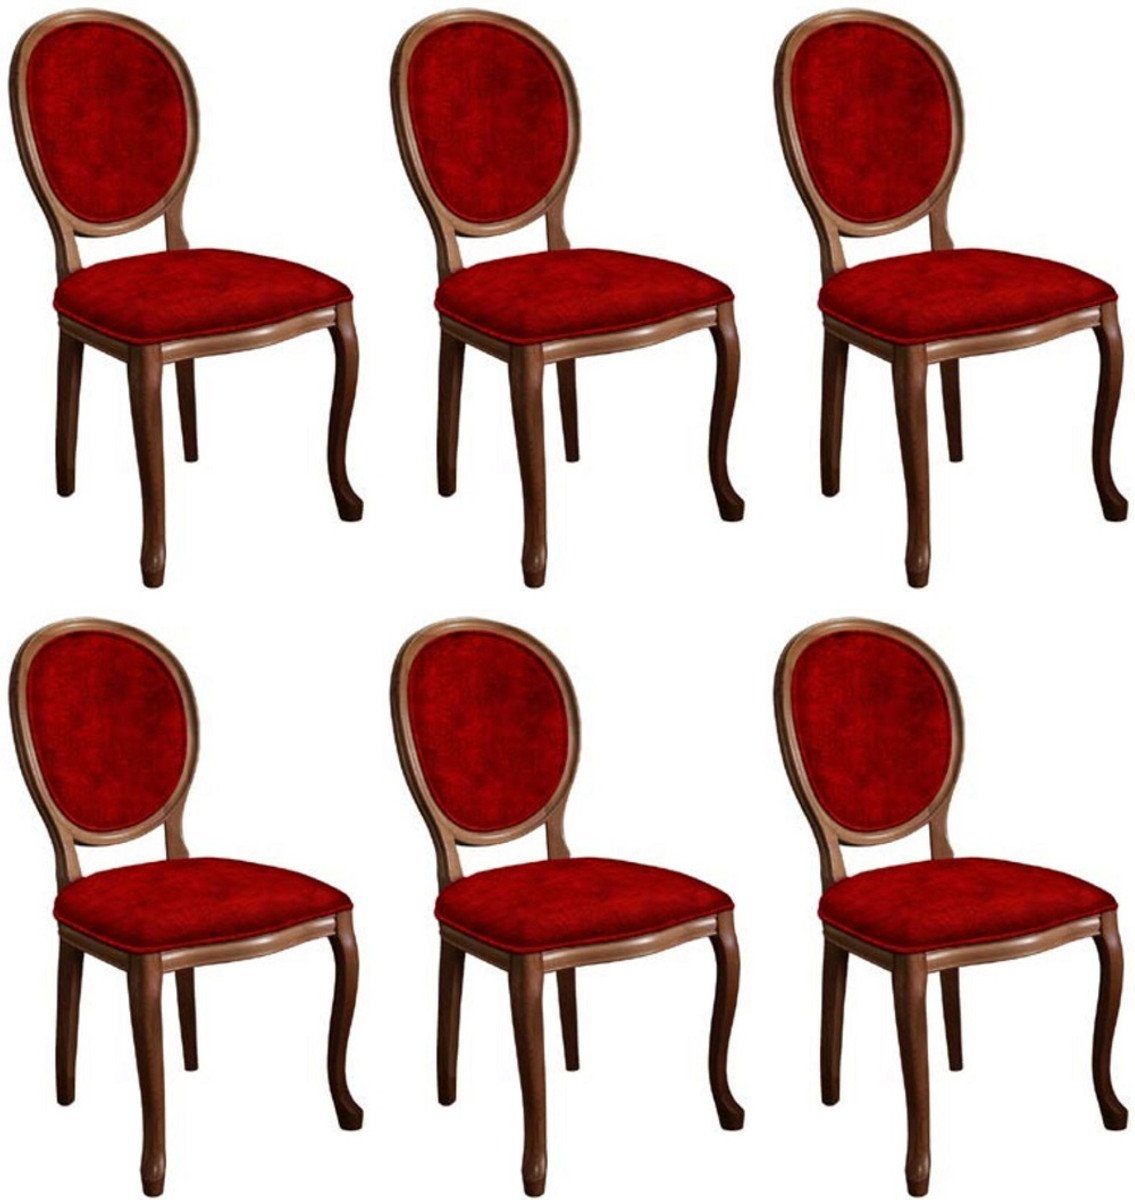 Casa Padrino Esszimmerstuhl Barock Esszimmerstuhl Set Bordeauxrot / Braun - 6 Handgefertigte Küchen Stühle im Barockstil - Barock Esszimmer Möbel